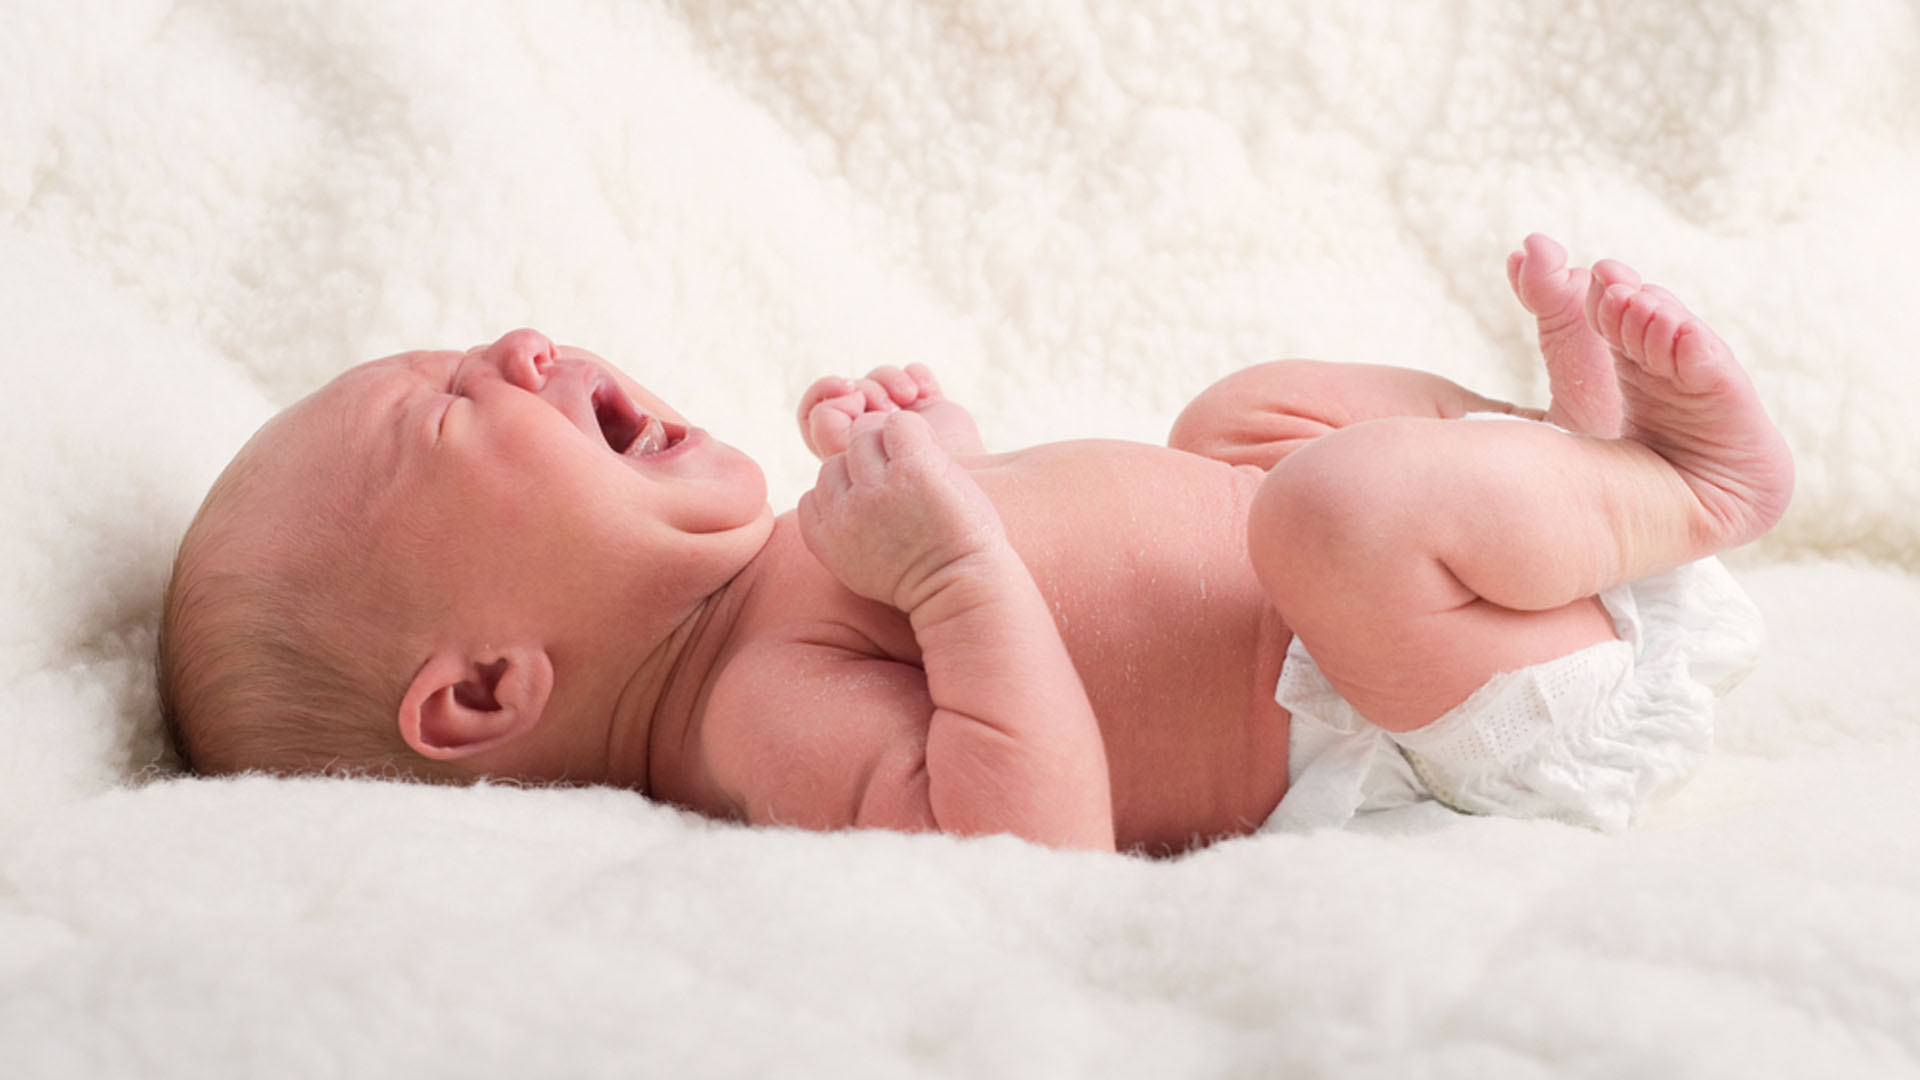 Esta Es La Mejor Manera De Calmar El Llanto De Un Bebé Según La Ciencia Infobae